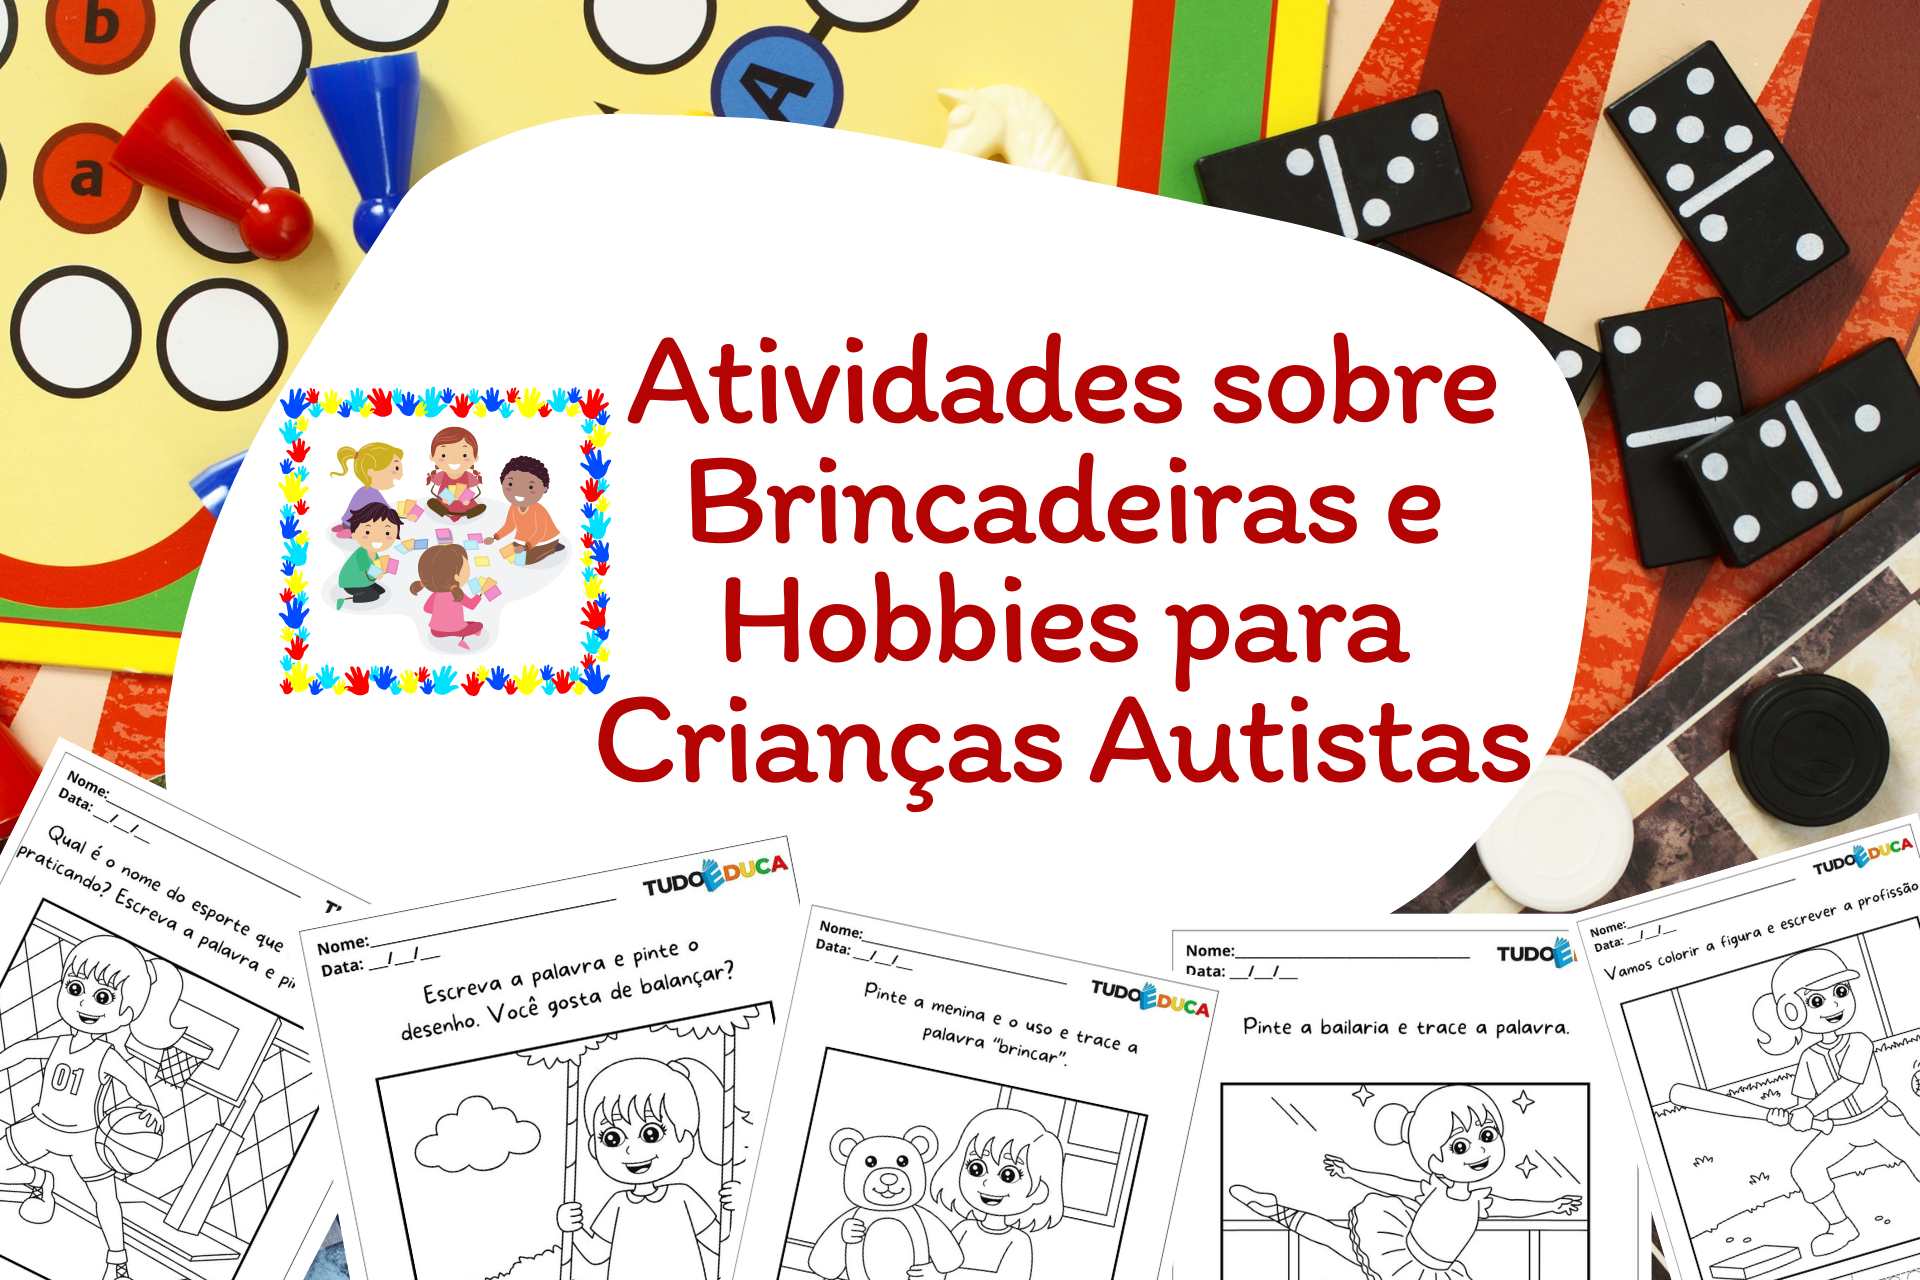 Atividades sobre Brincadeiras e Hobbies para Crianças Autistas